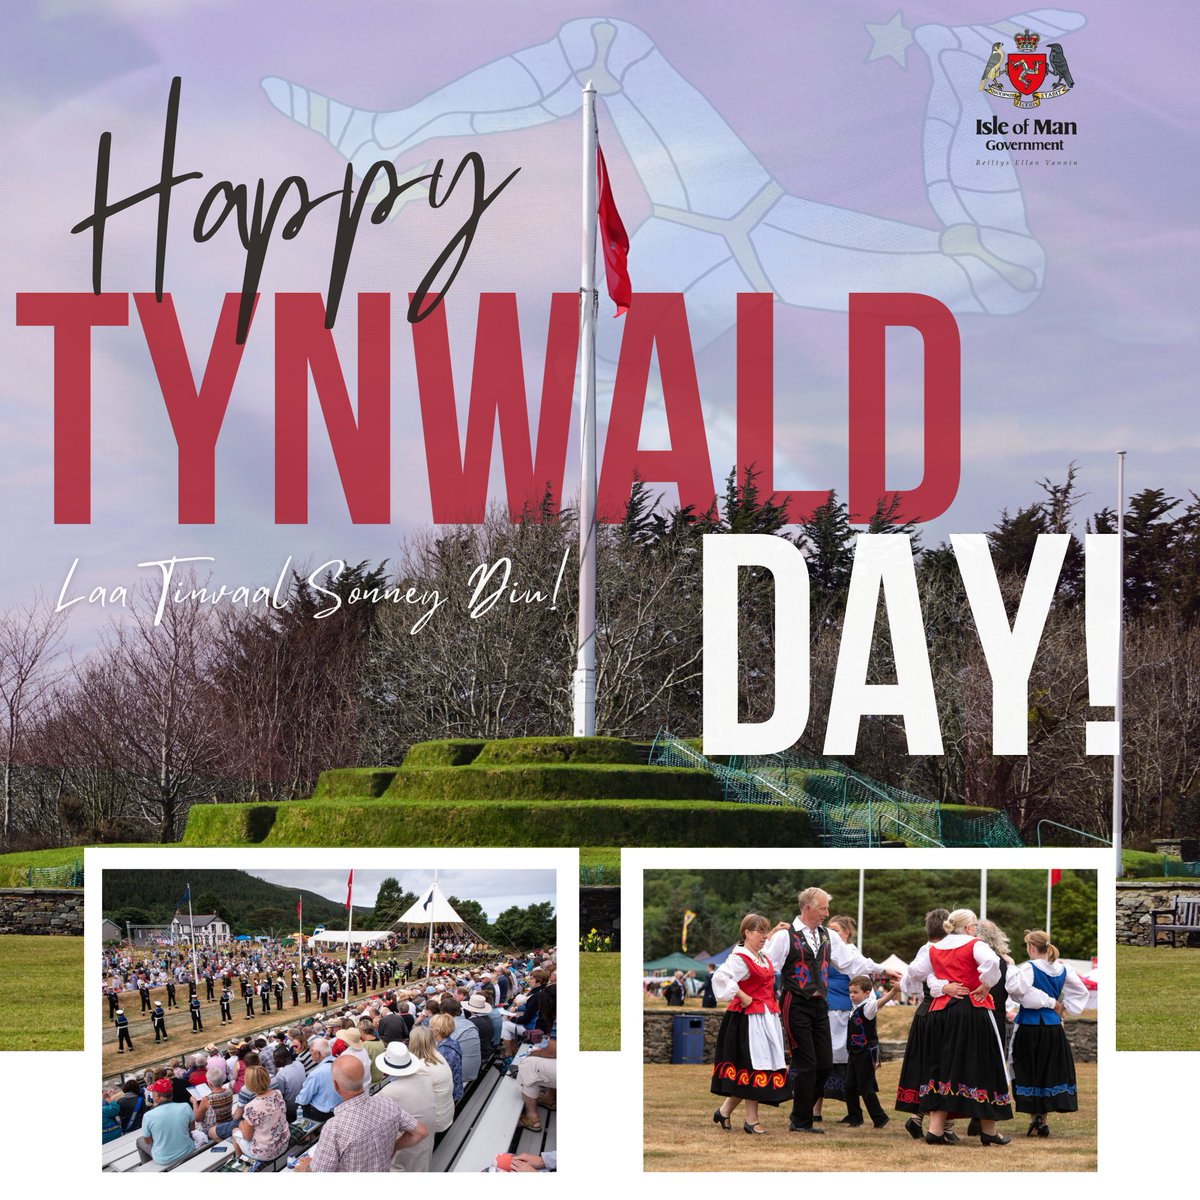 Laa Tinvaal Sonney Diu! Happy Tynwald Day! #IsleofMan #IoM #TynwaldDay